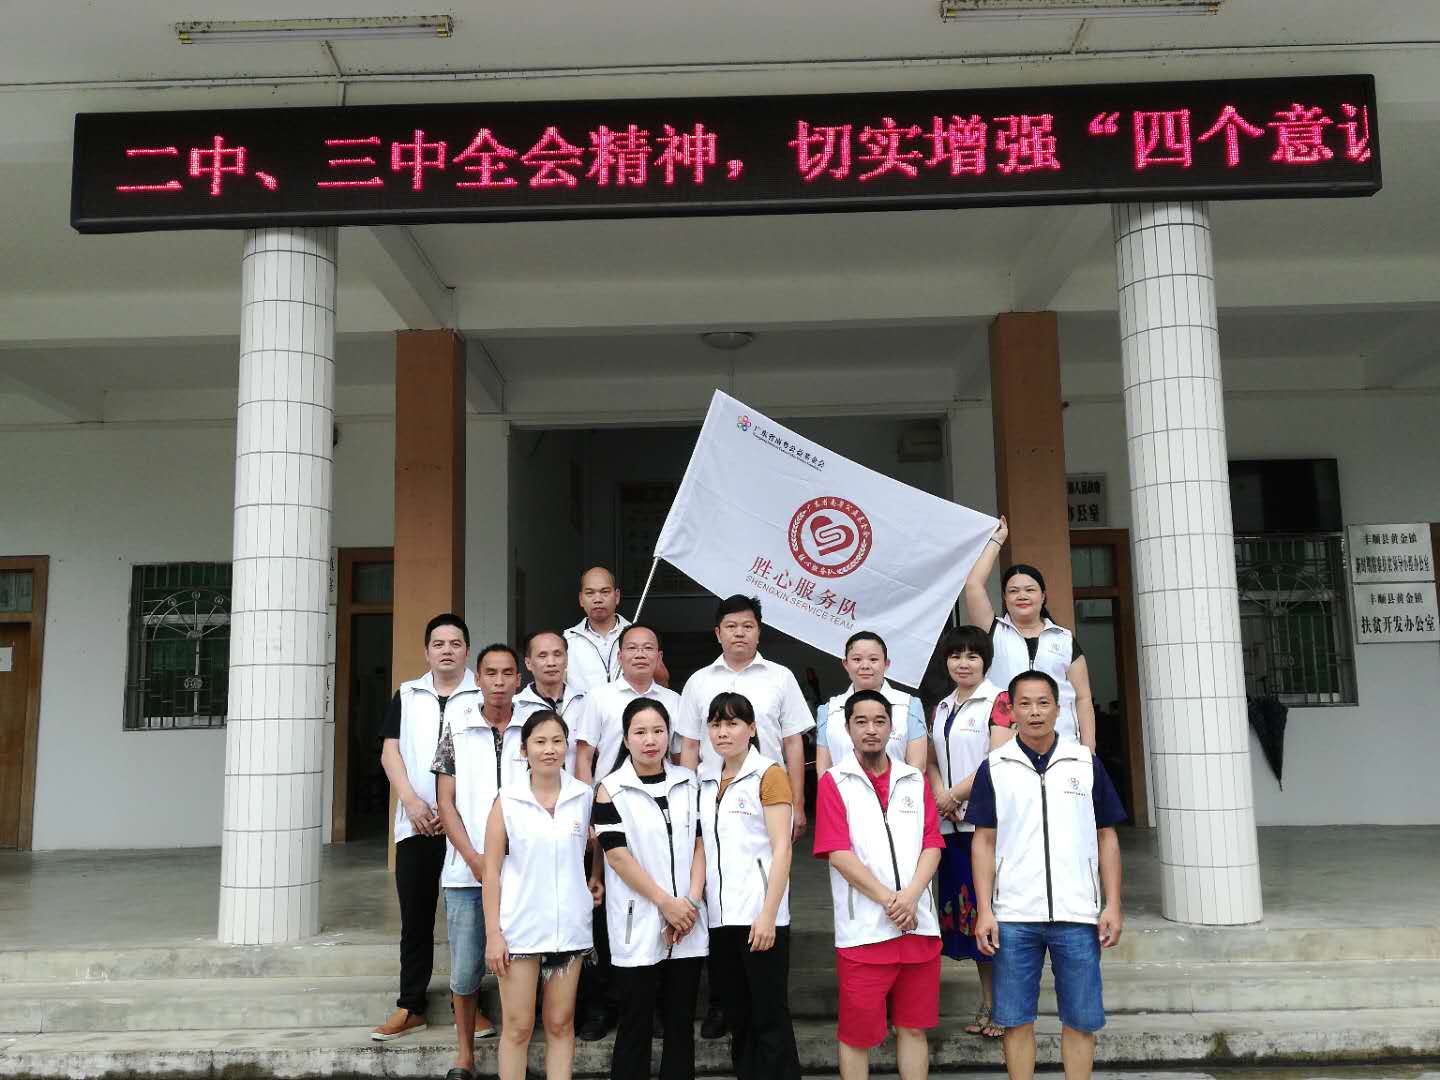 感谢丰顺县黄金镇人民政府对志愿服务事业的关爱